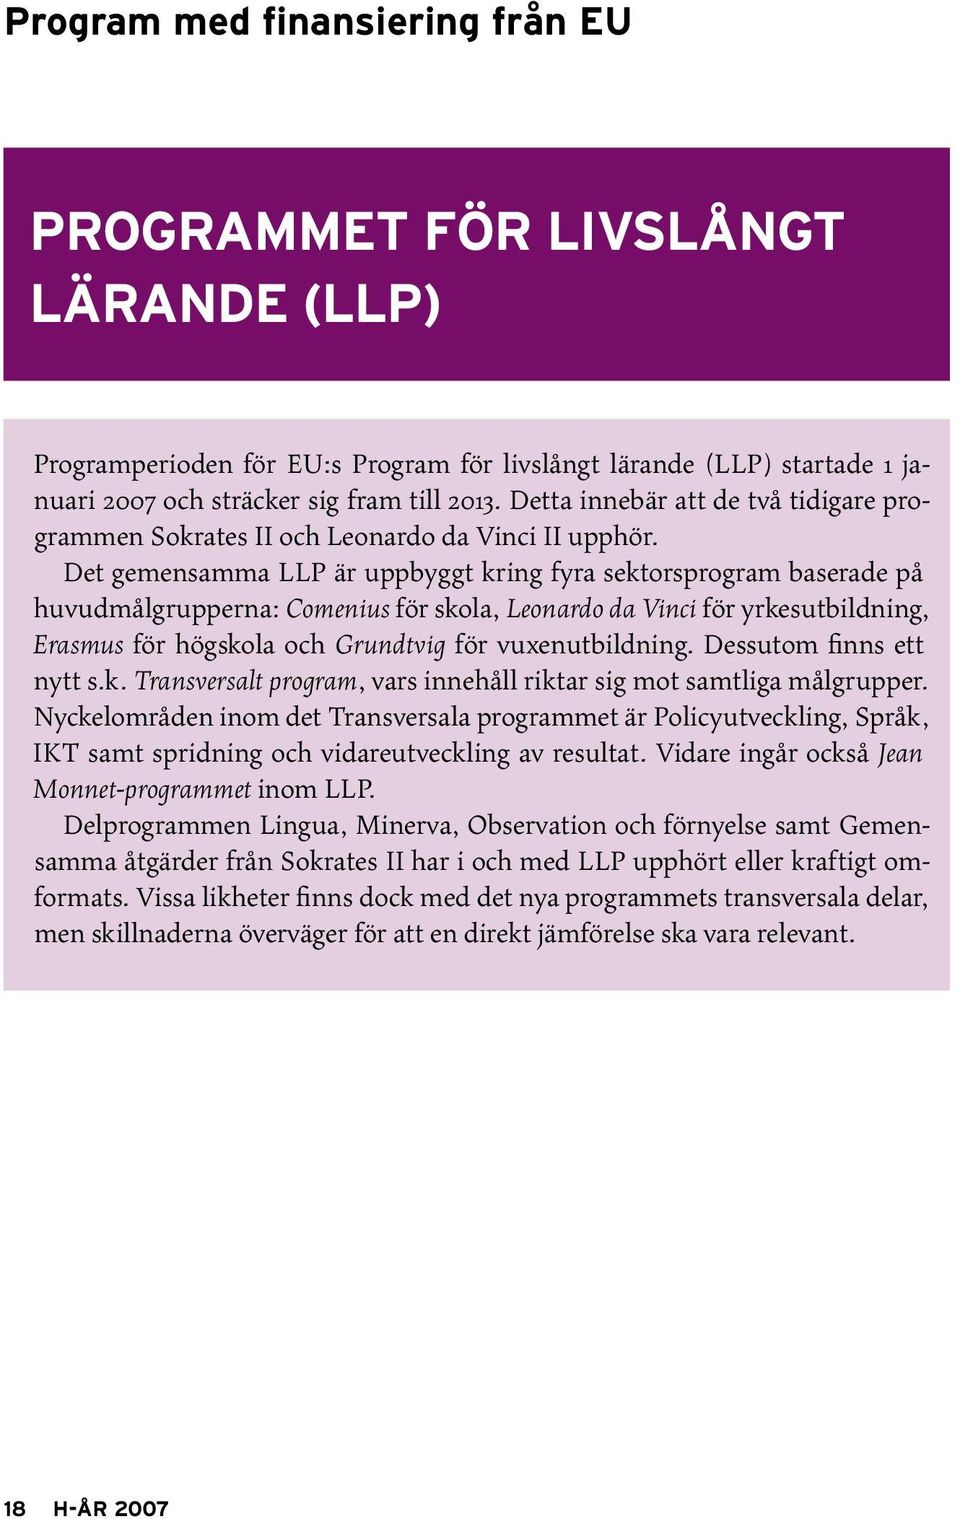 Det gemensamma LLP är uppbyggt kring fyra sektorsprogram baserade på huvudmålgrupperna: Comenius för skola, Leonardo da Vinci för yrkesutbildning, Erasmus för högskola och Grundtvig för